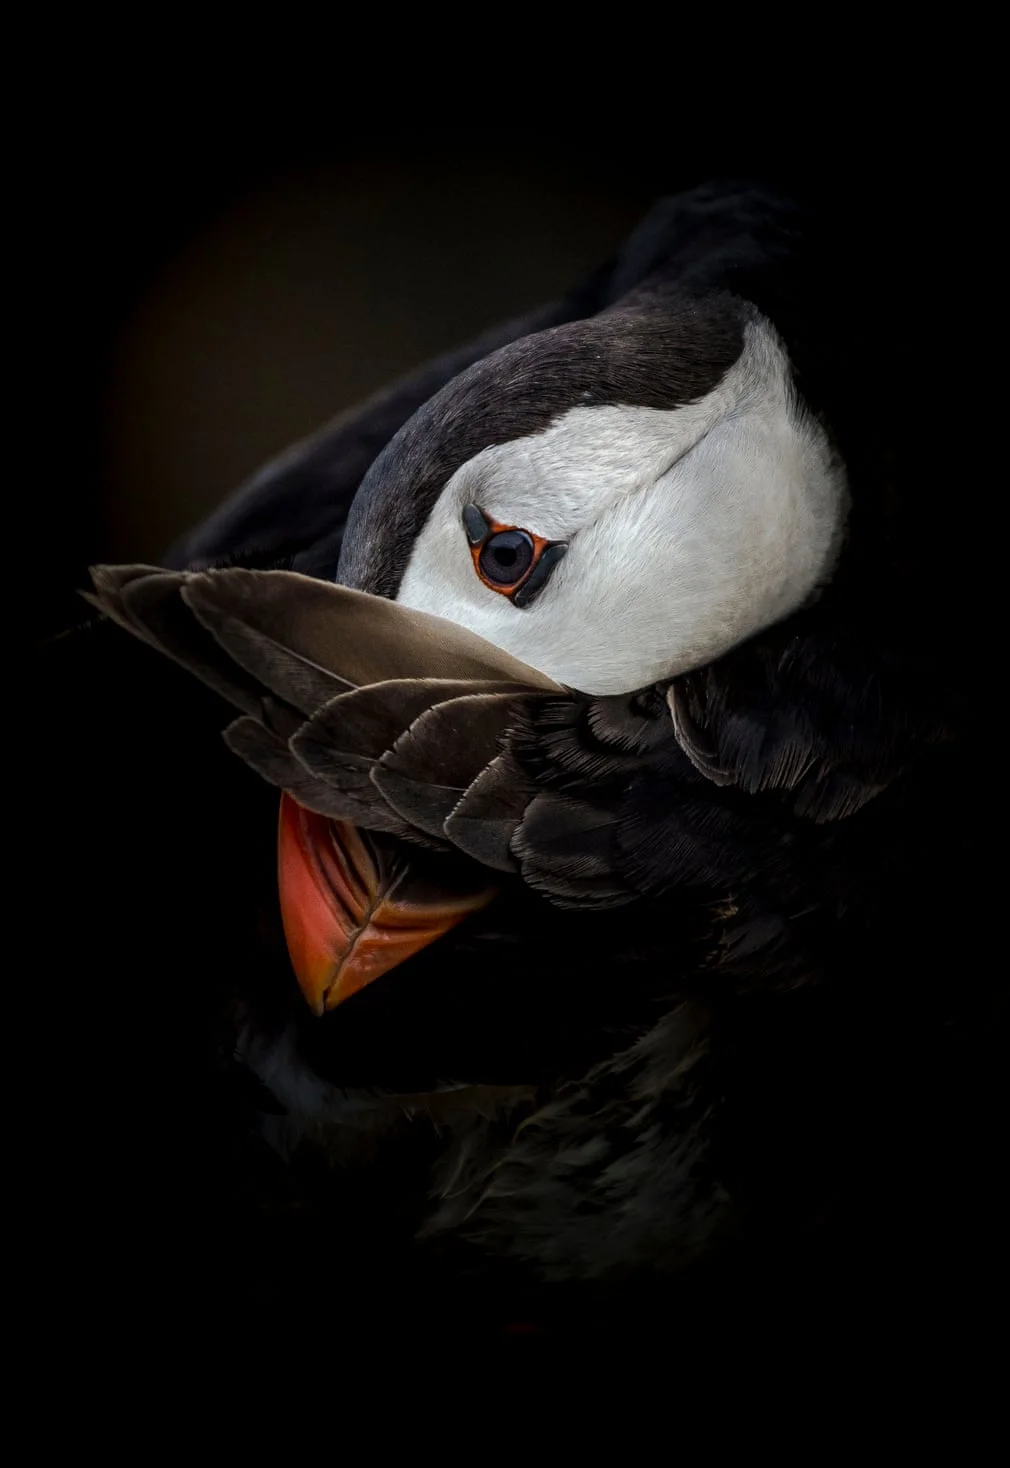 British Wildlife Photography Awards показал лучшие фотографии природы за 10 лет - фото 492769